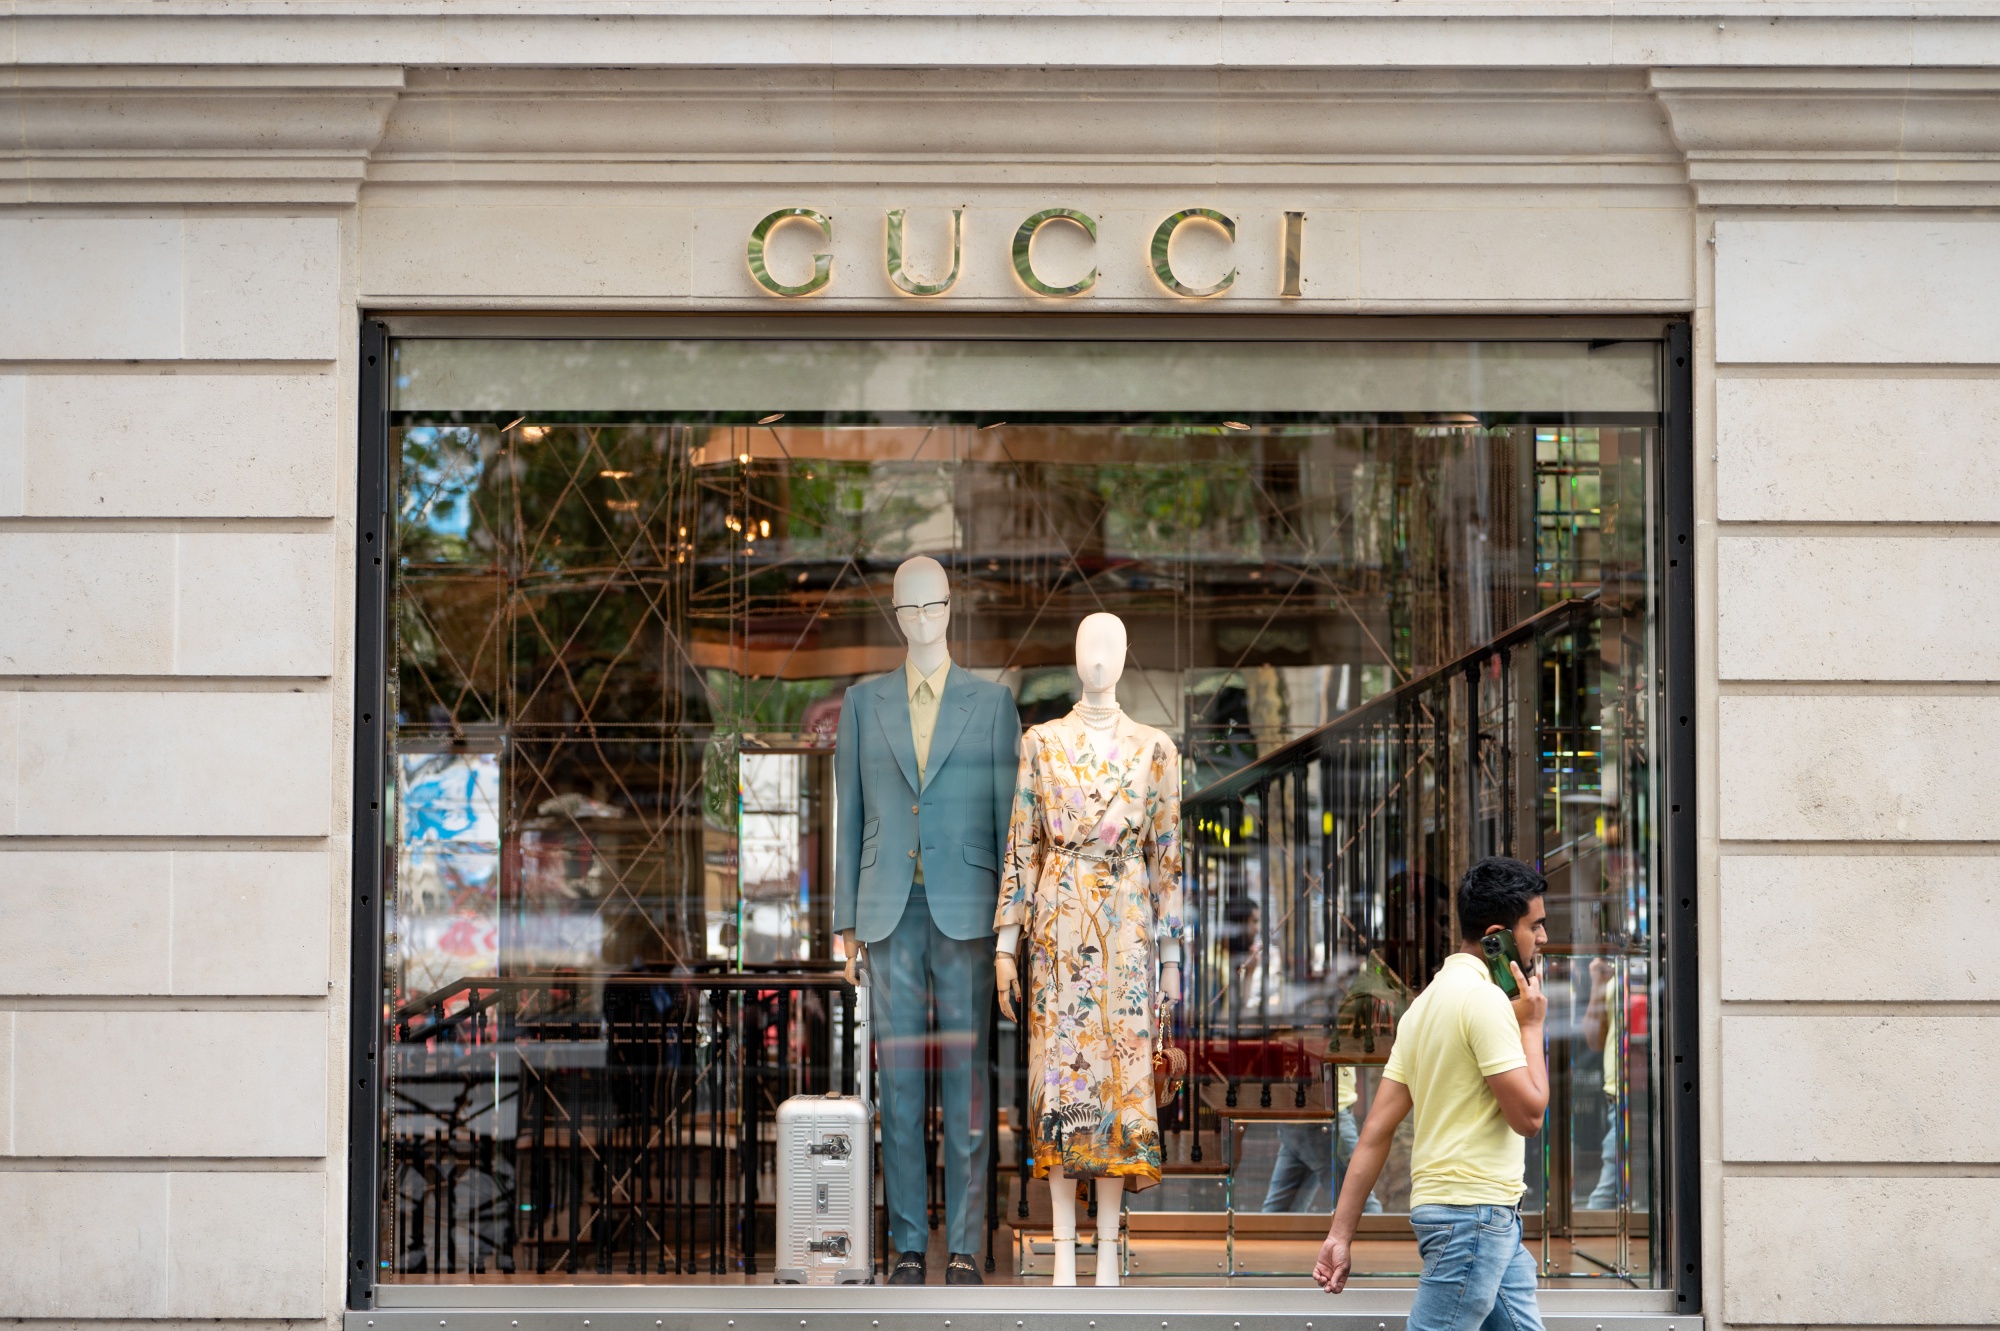 Gucci India | Gucci Bags India | Shop Gucci Fashion Accessories Online